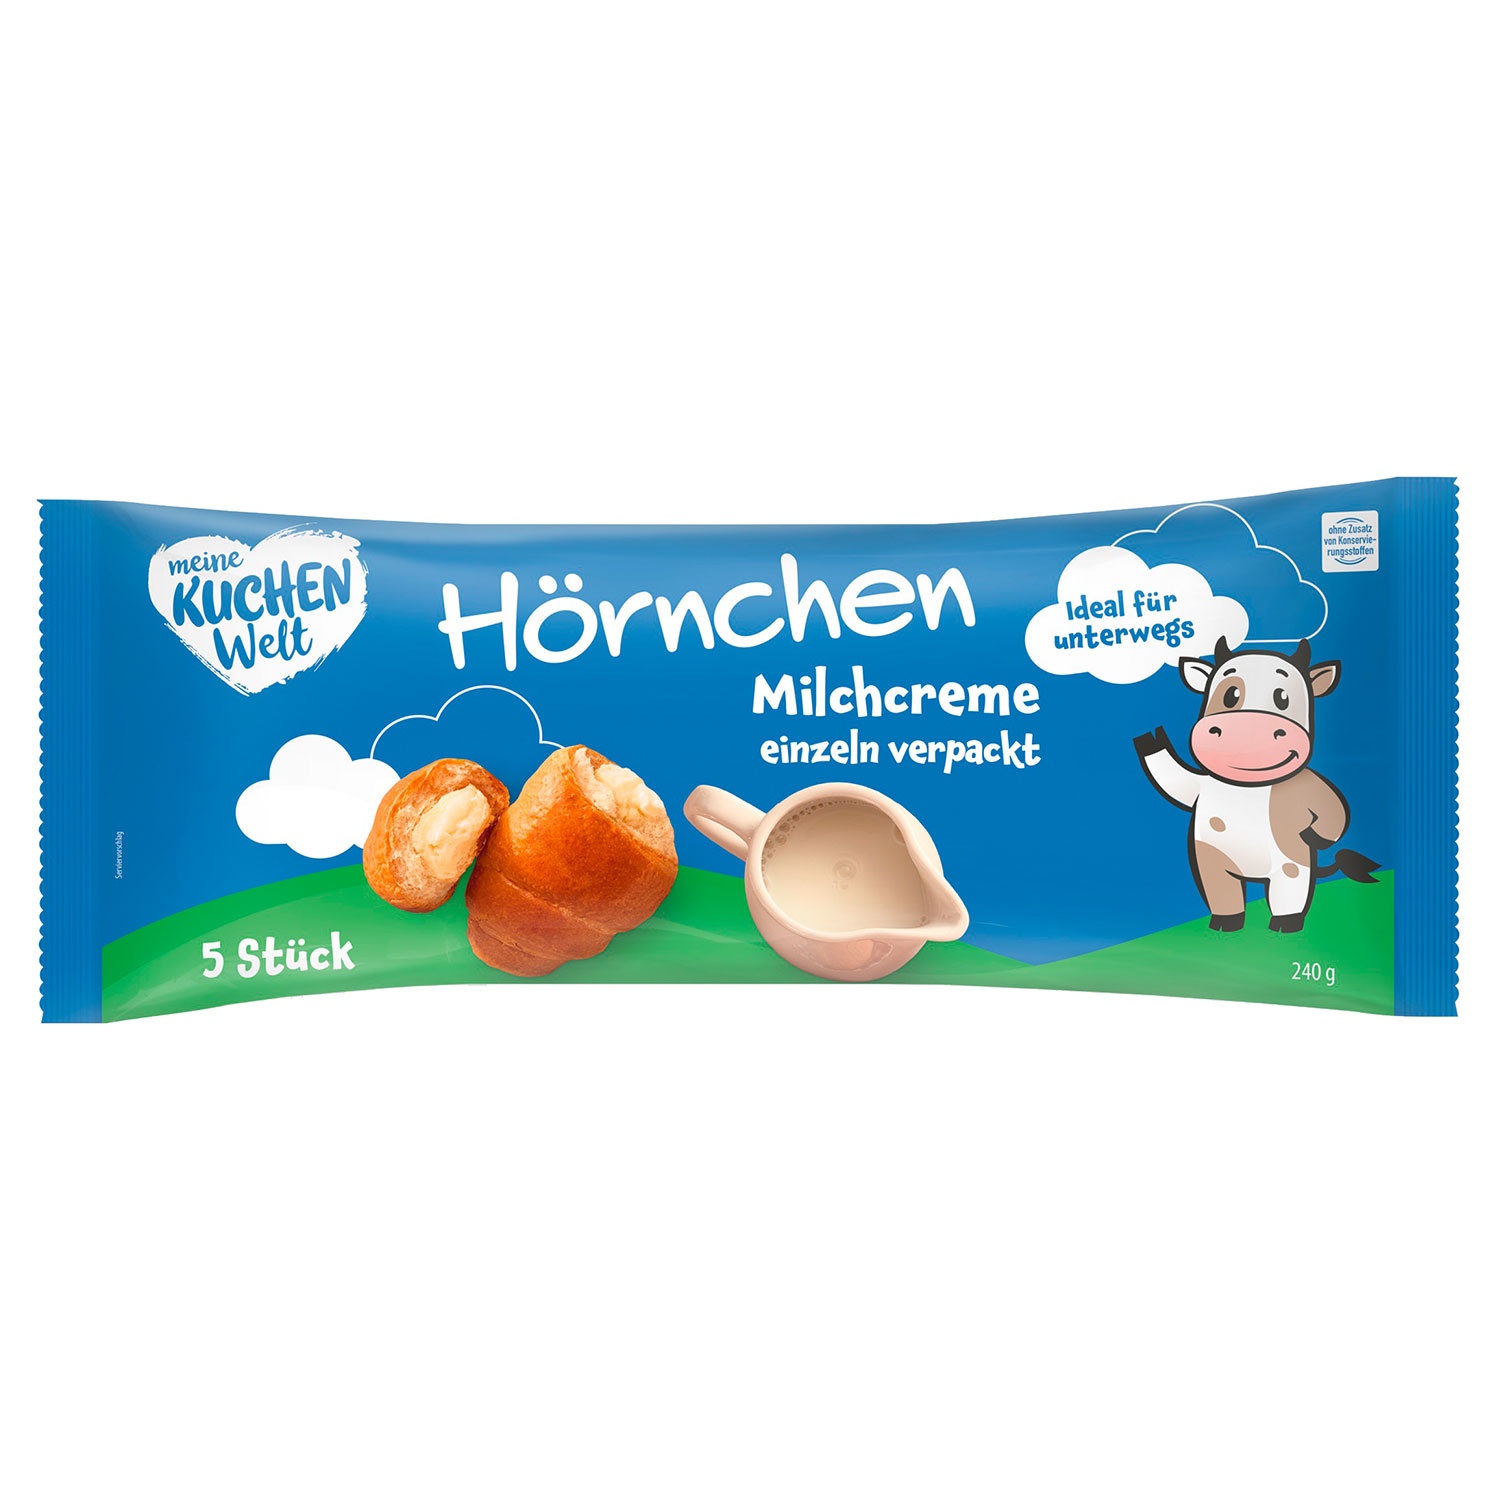 MEINE KUCHENWELT Hörnchen 240 g, Milchcreme